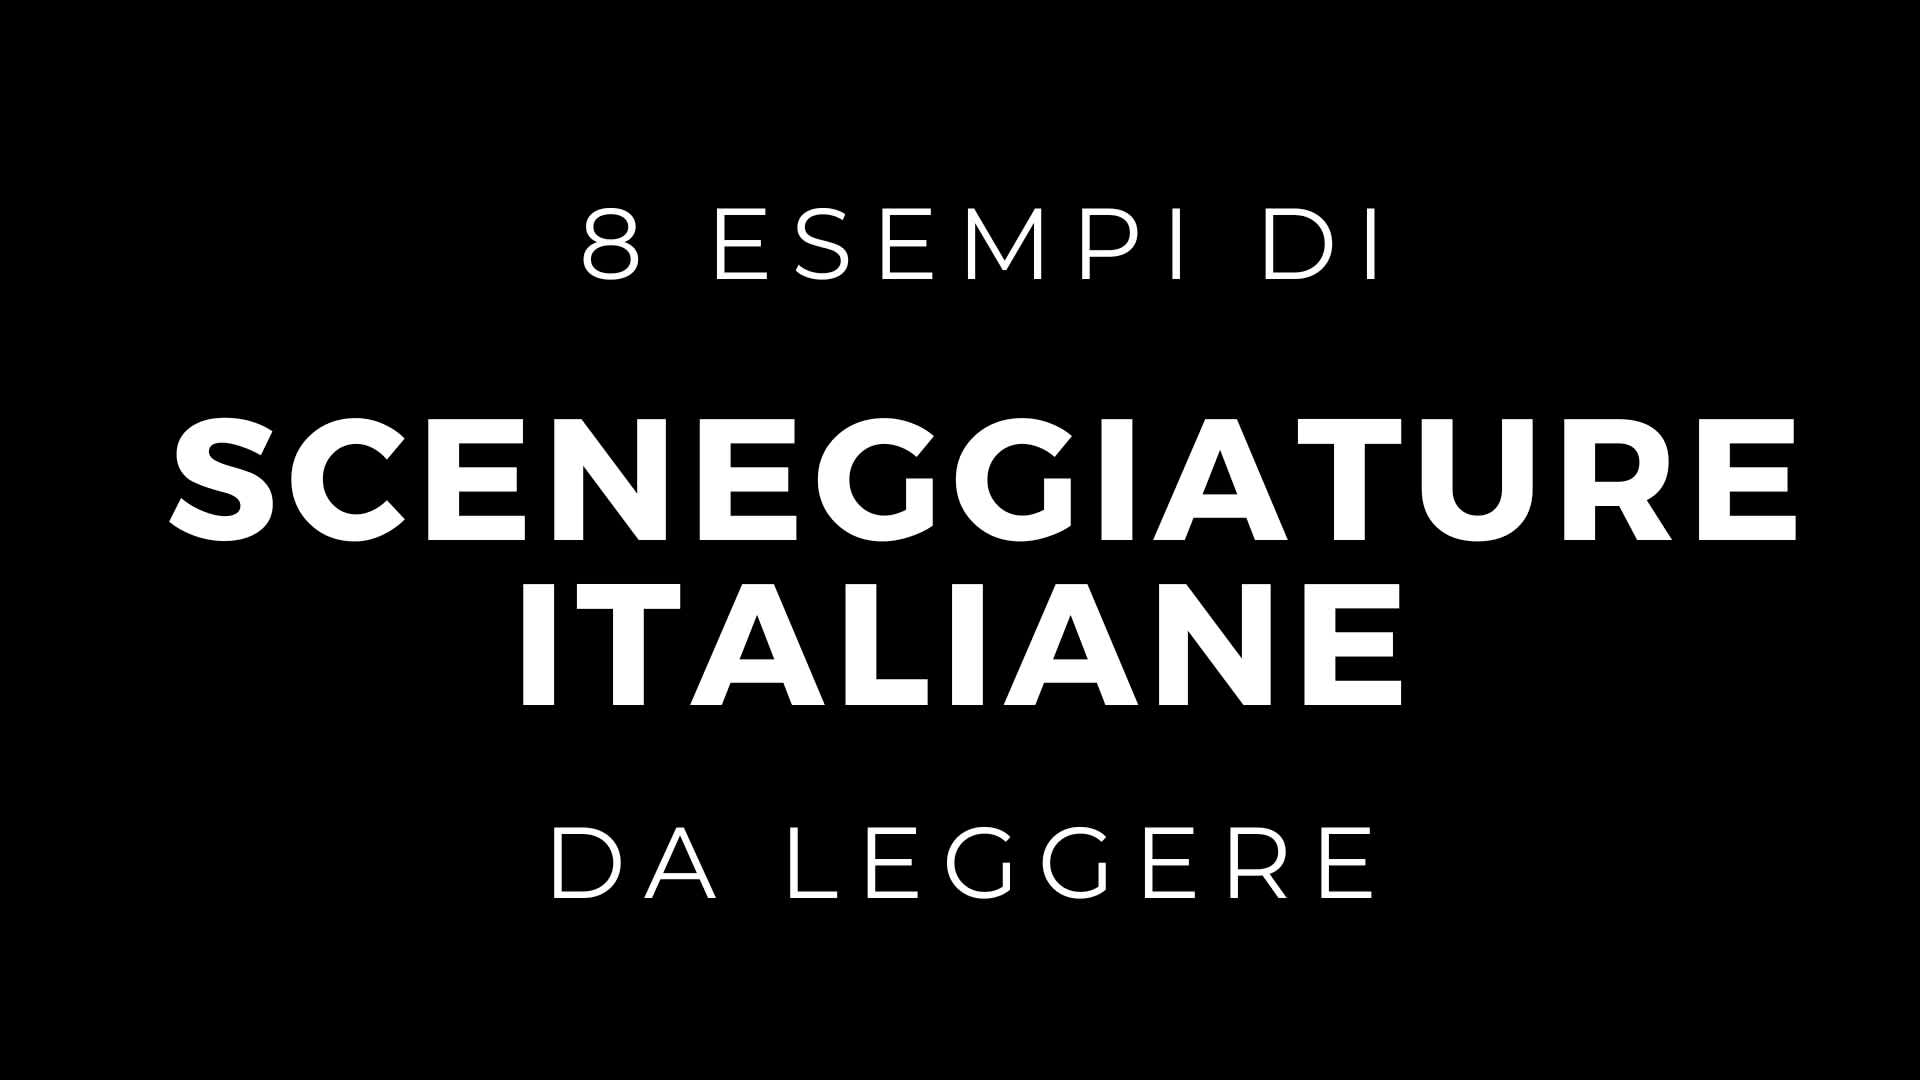 8 esempi di sceneggiature italiane da leggere